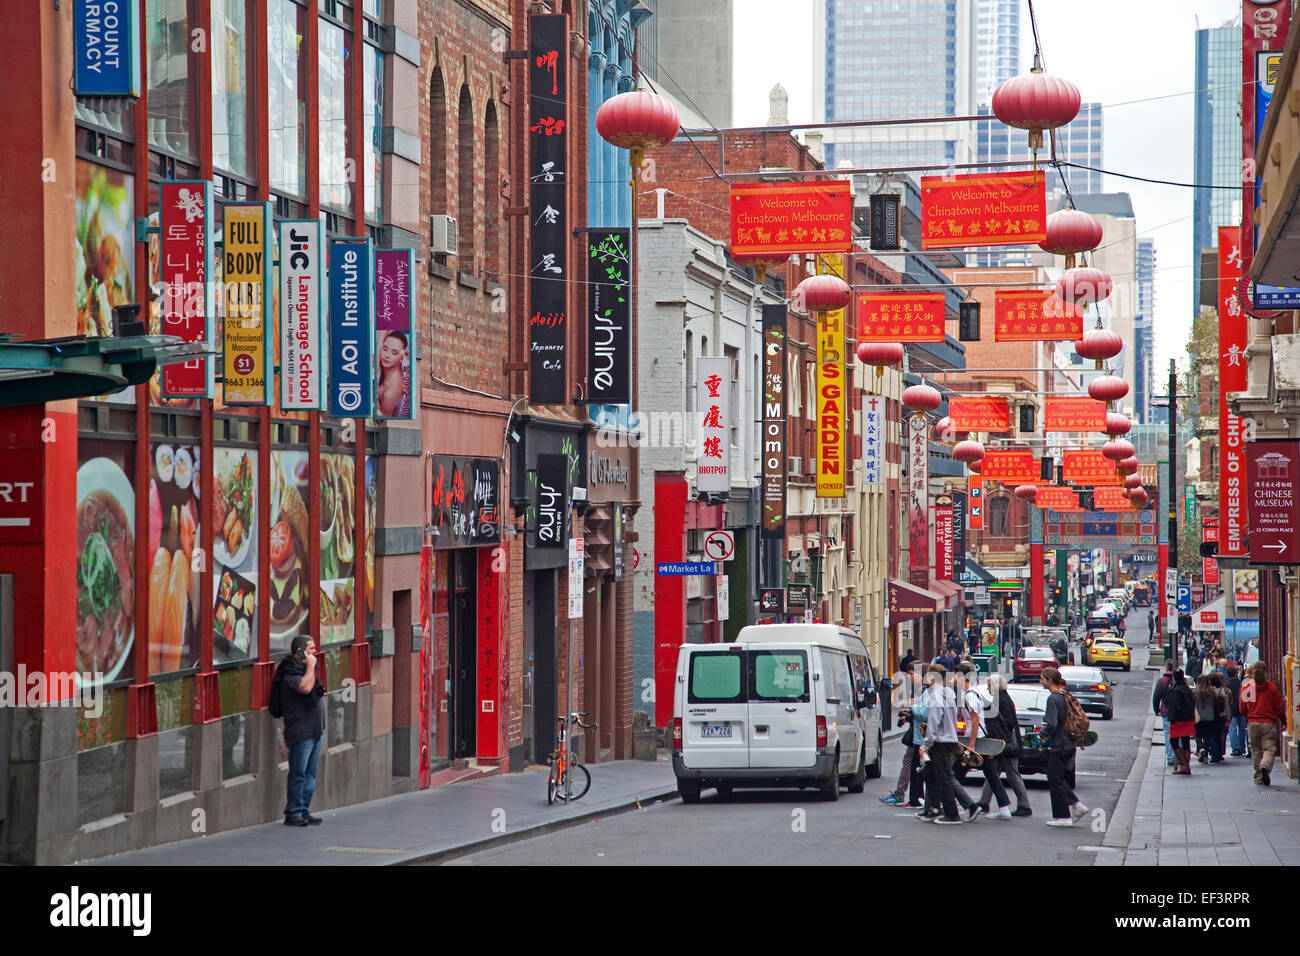 Enseignes de boutiques et restaurants dans le quartier chinois de l'Australie dans la région de Little Bourke Street, au centre-ville de Melbourne, Victoria, Australie Banque D'Images